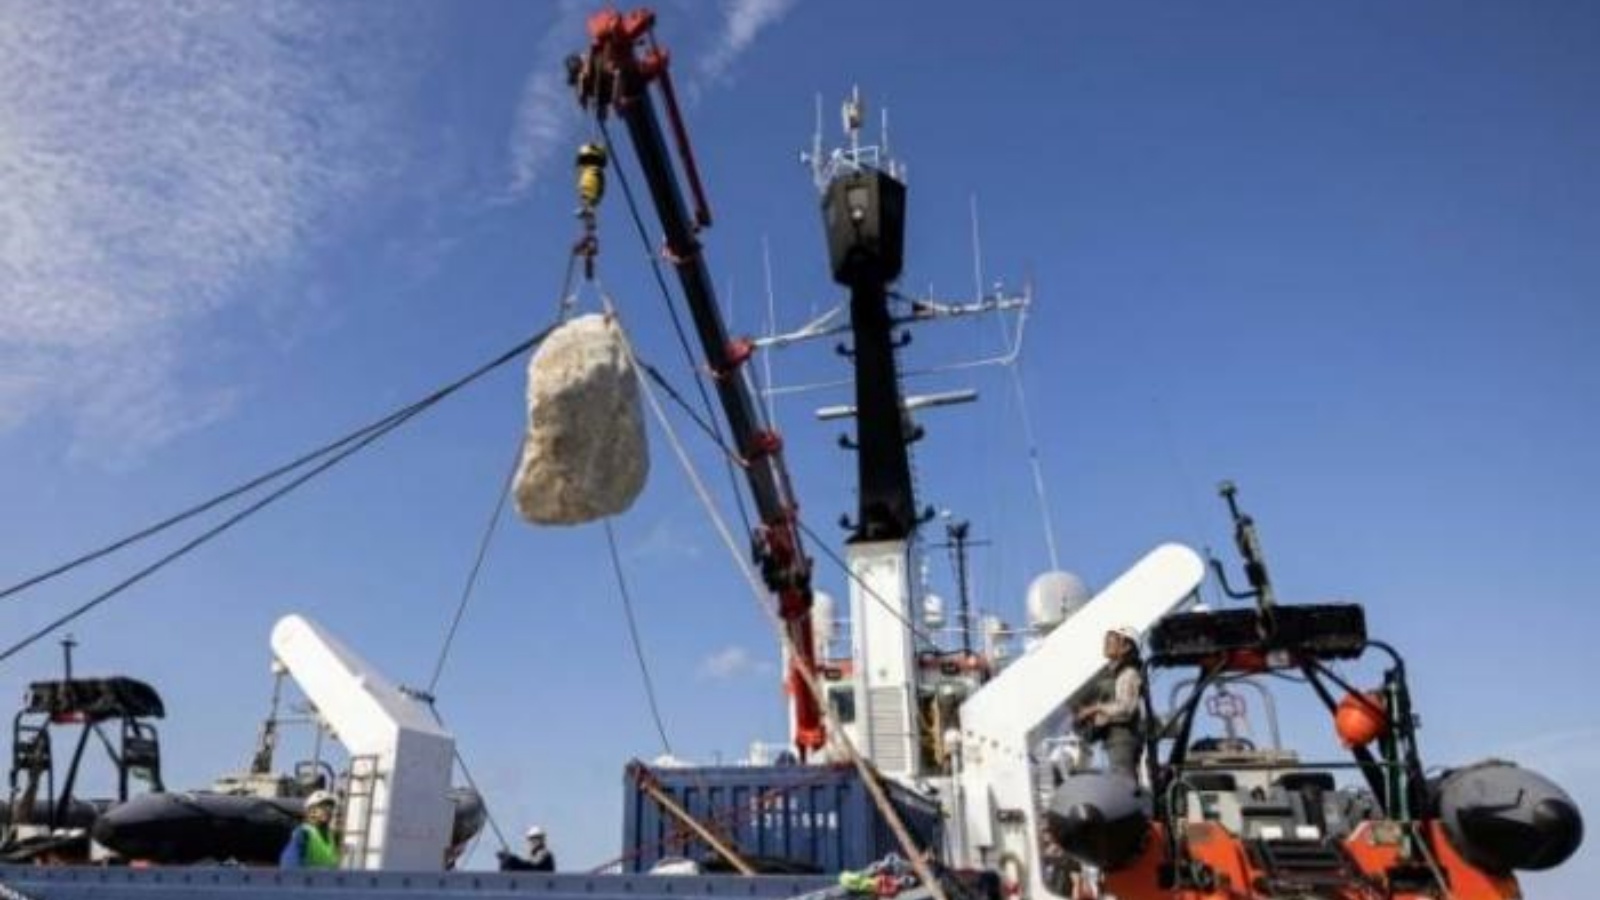 تم إسقاط كتلة من الحجر في البحر من قبل منظمة السلام الأخضر غرينبيس في الطرف الجنوبي الغربي لإنكلترا، 1 سبتمبر 2022